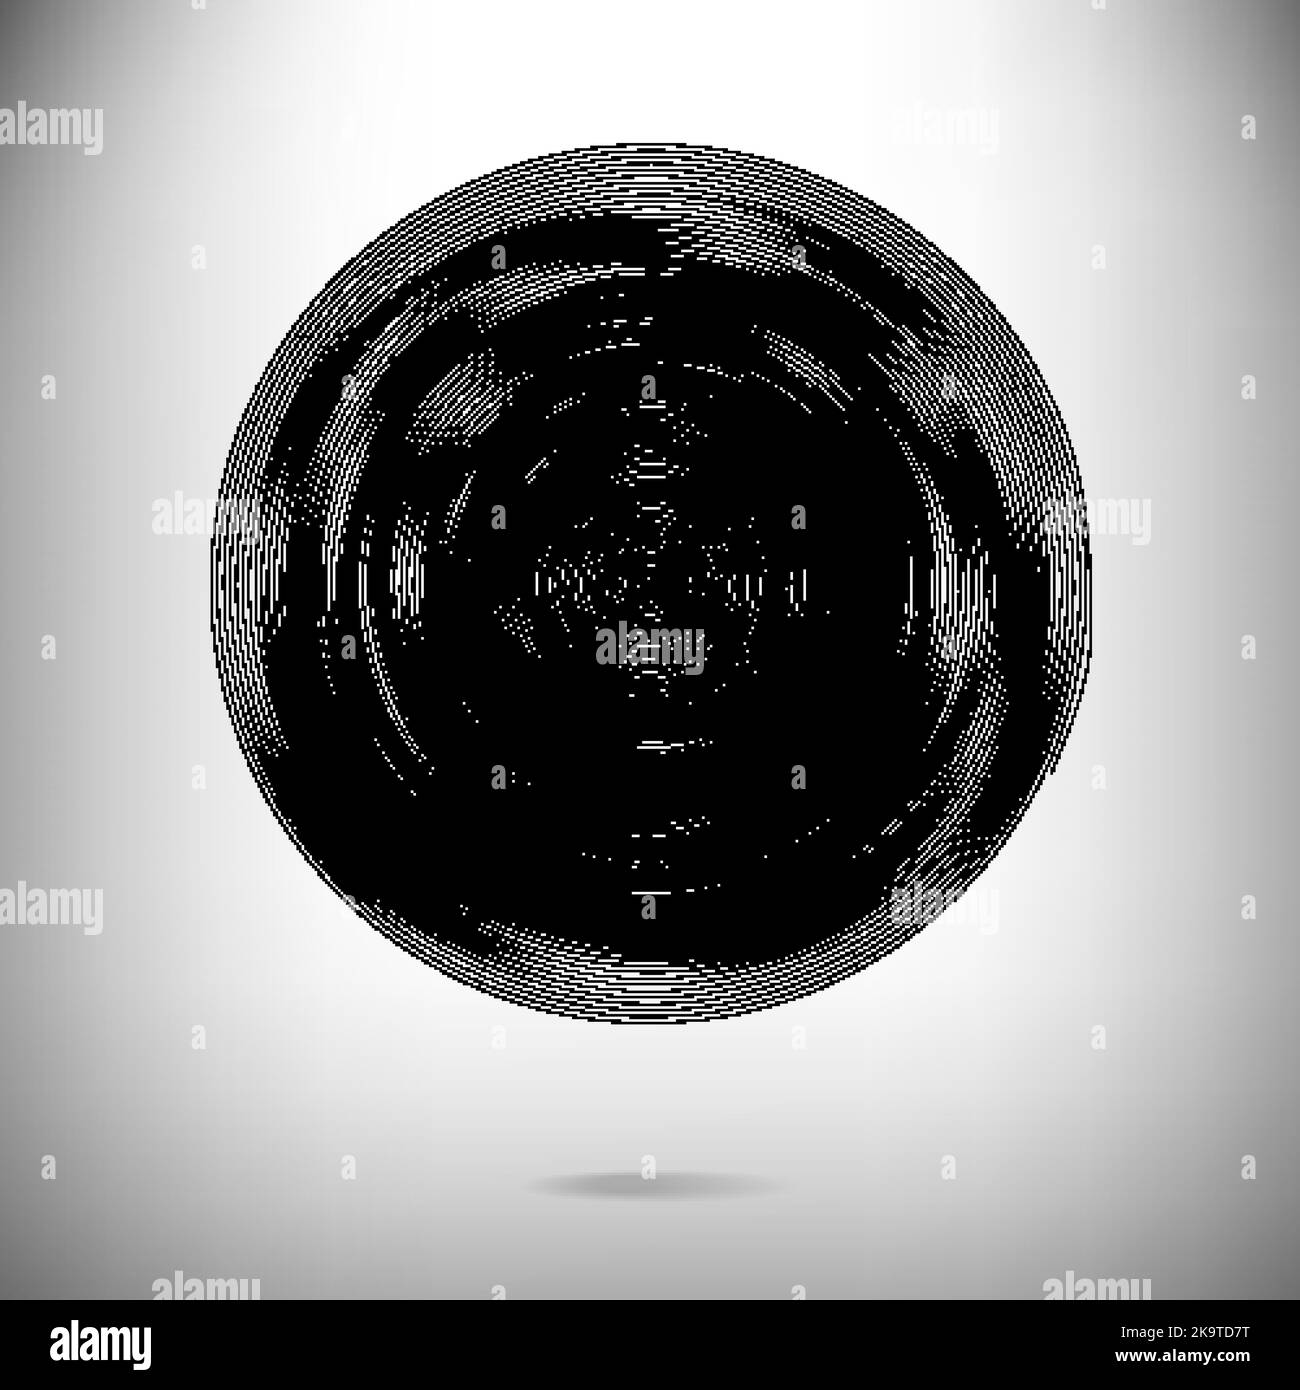 Abstrakter Hintergrund in einem Kreis aus schwarzen und weißen konzentrischen Streifen. Stock Vektor